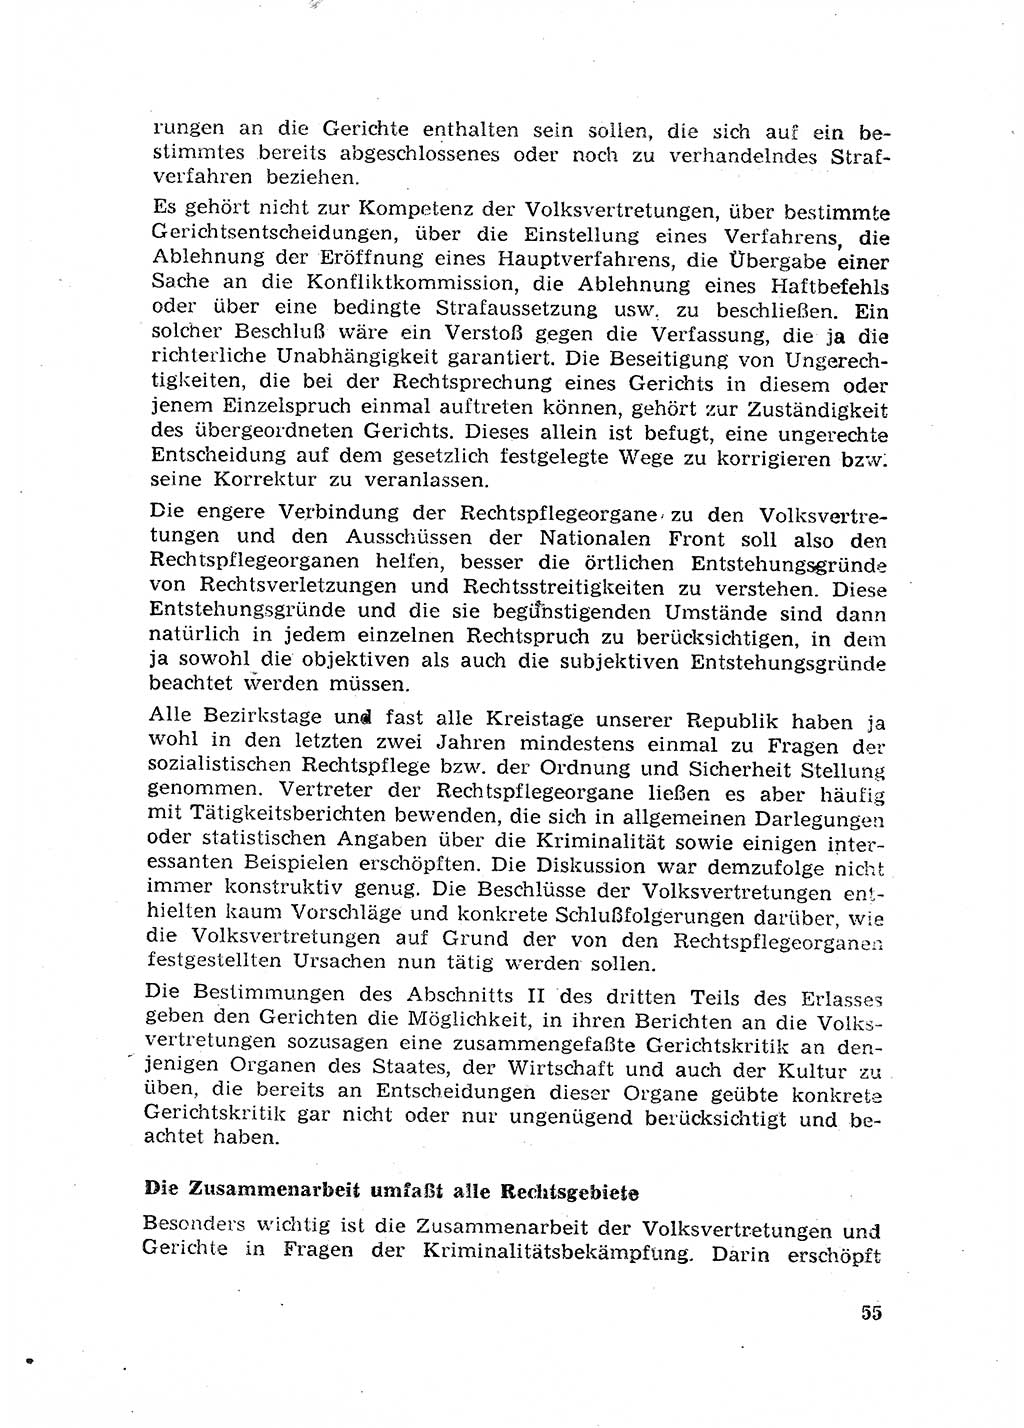 Rechtspflegeerlaß [Deutsche Demokratische Republik (DDR)] 1963, Seite 55 (R.-Pfl.-Erl. DDR 1963, S. 55)